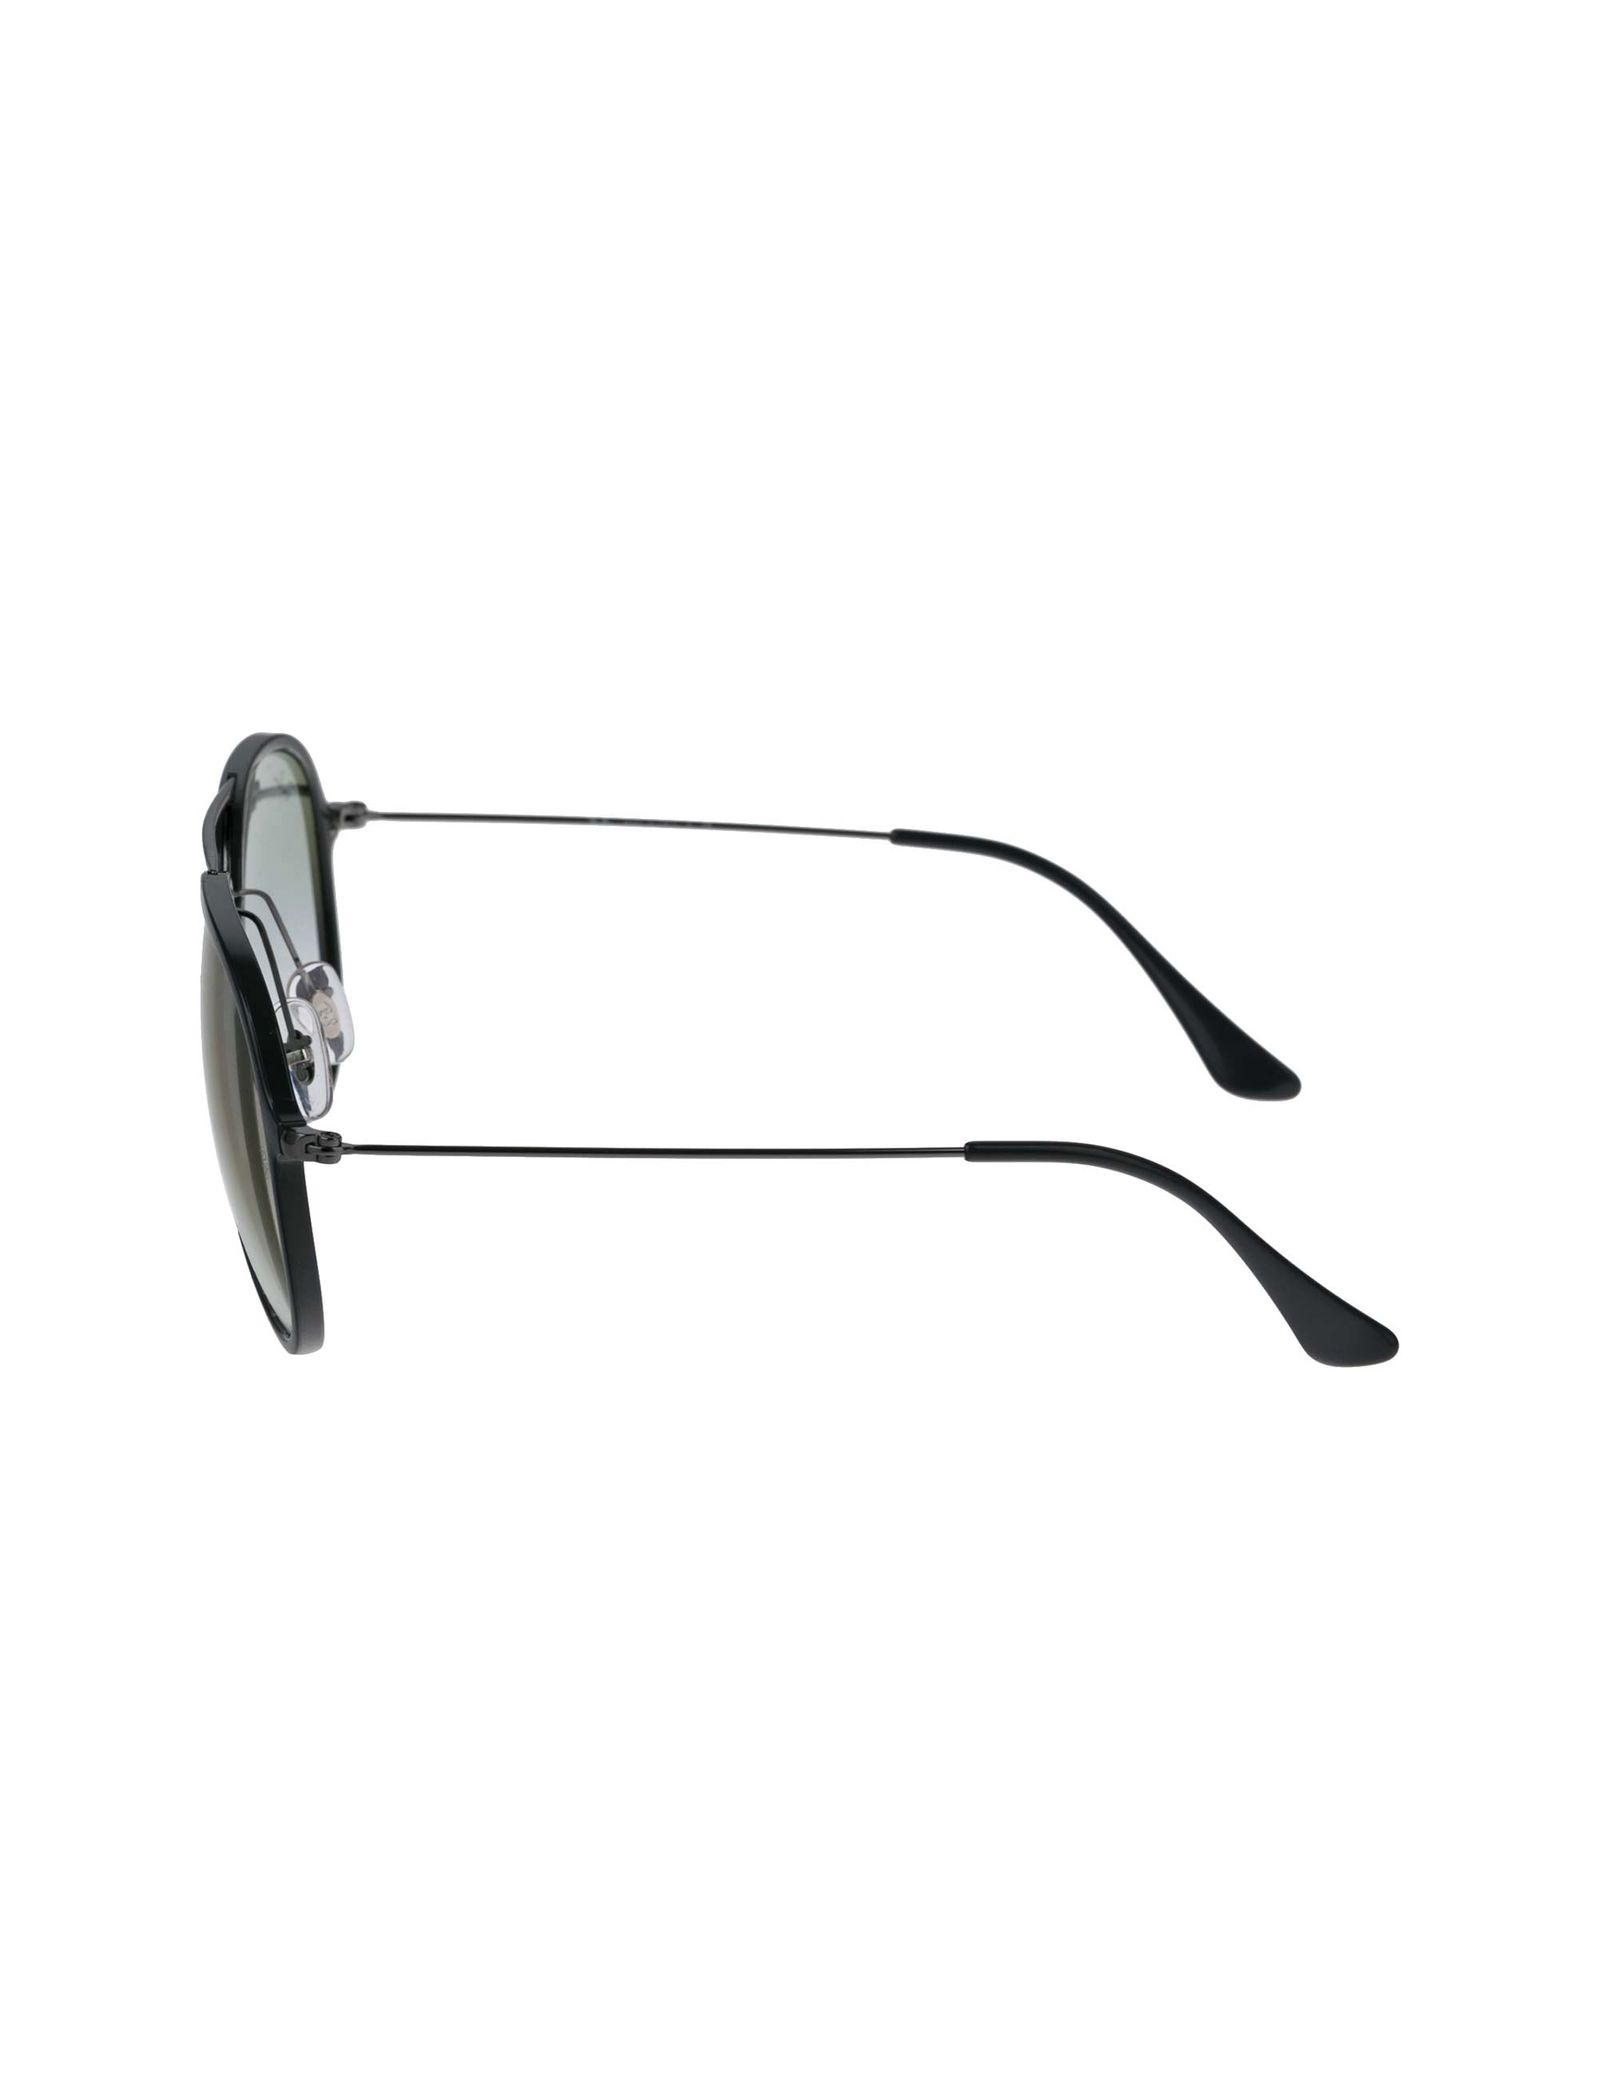 عینک آفتابی خلبانی مردانه - ری بن - مشکي - 8